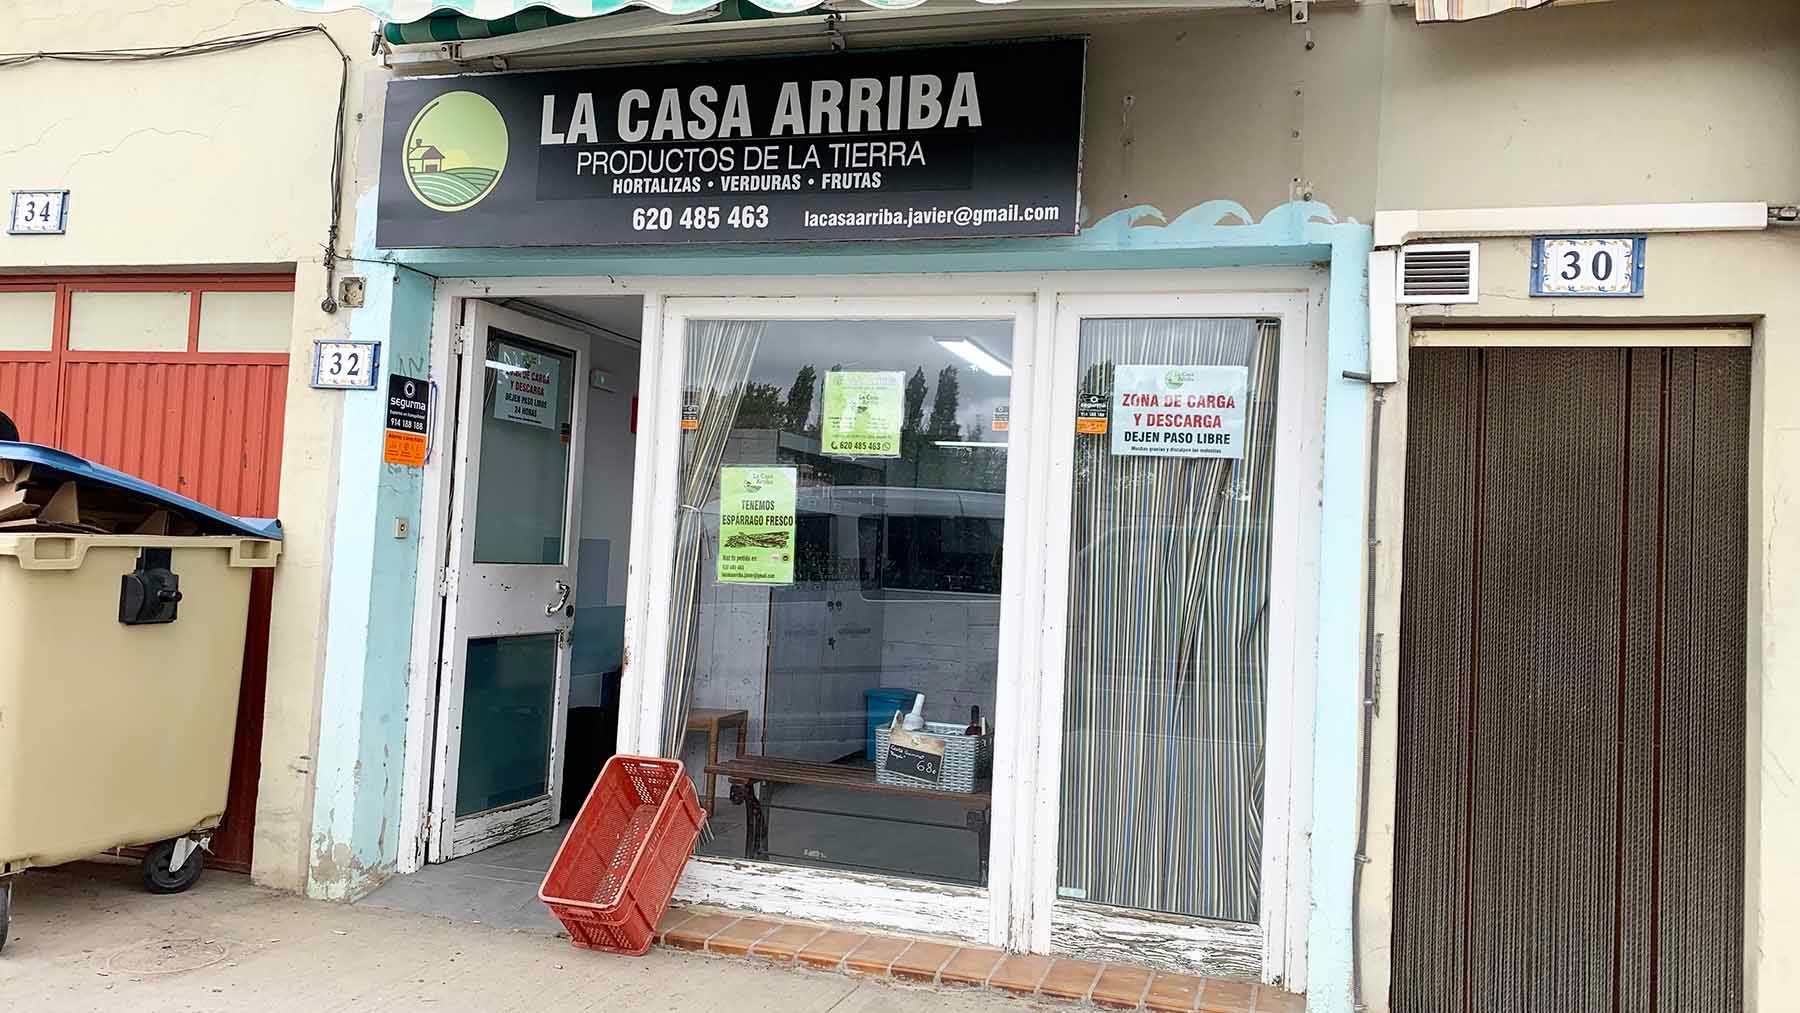 Fachada de la tienda 'La Casa Arriba' en la localidad de Murieta. Navarra.com